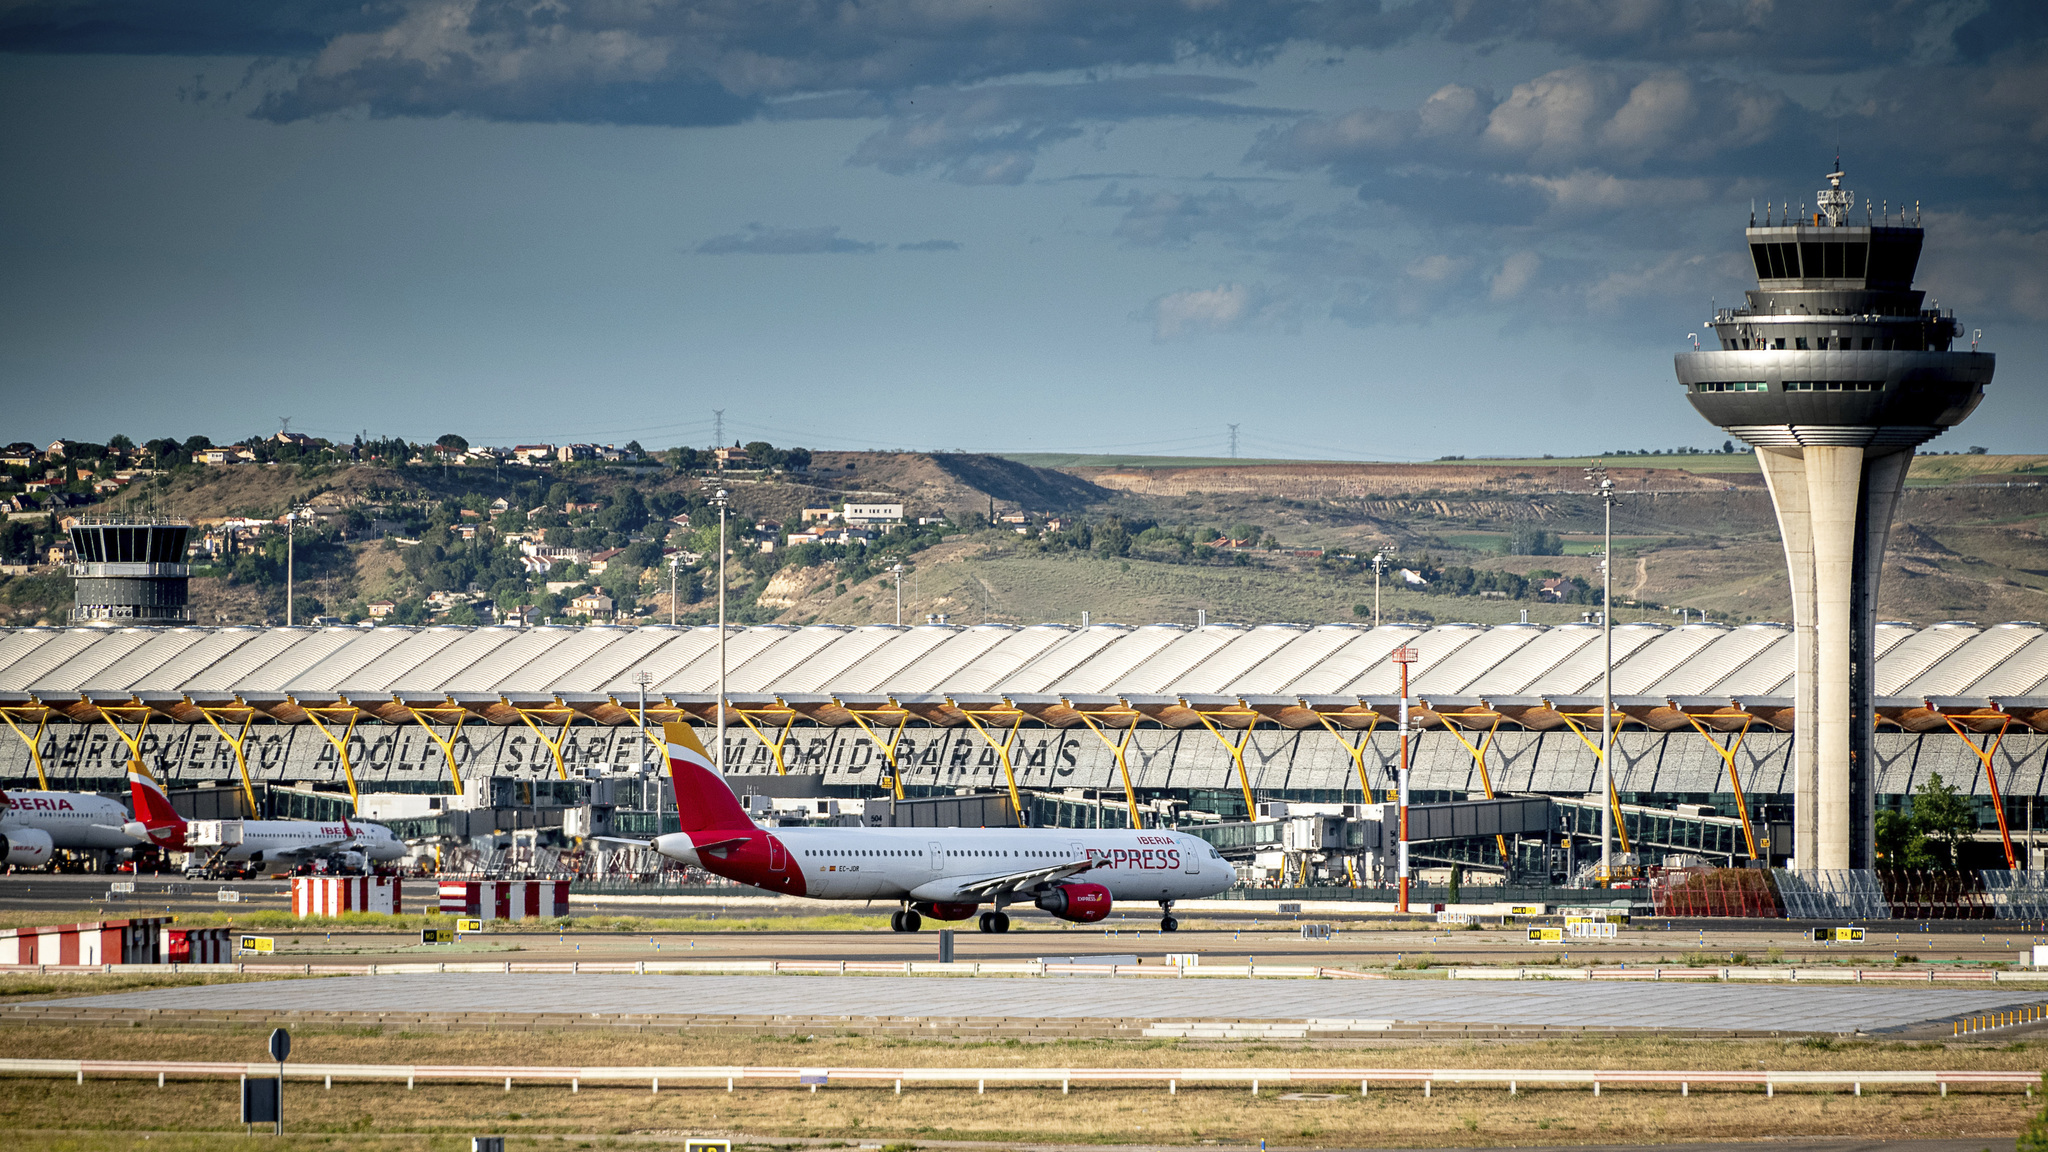 El aeropuerto Adolfo Surez Madrid-Barajas tiene programados 48 millones de asientos este verano.